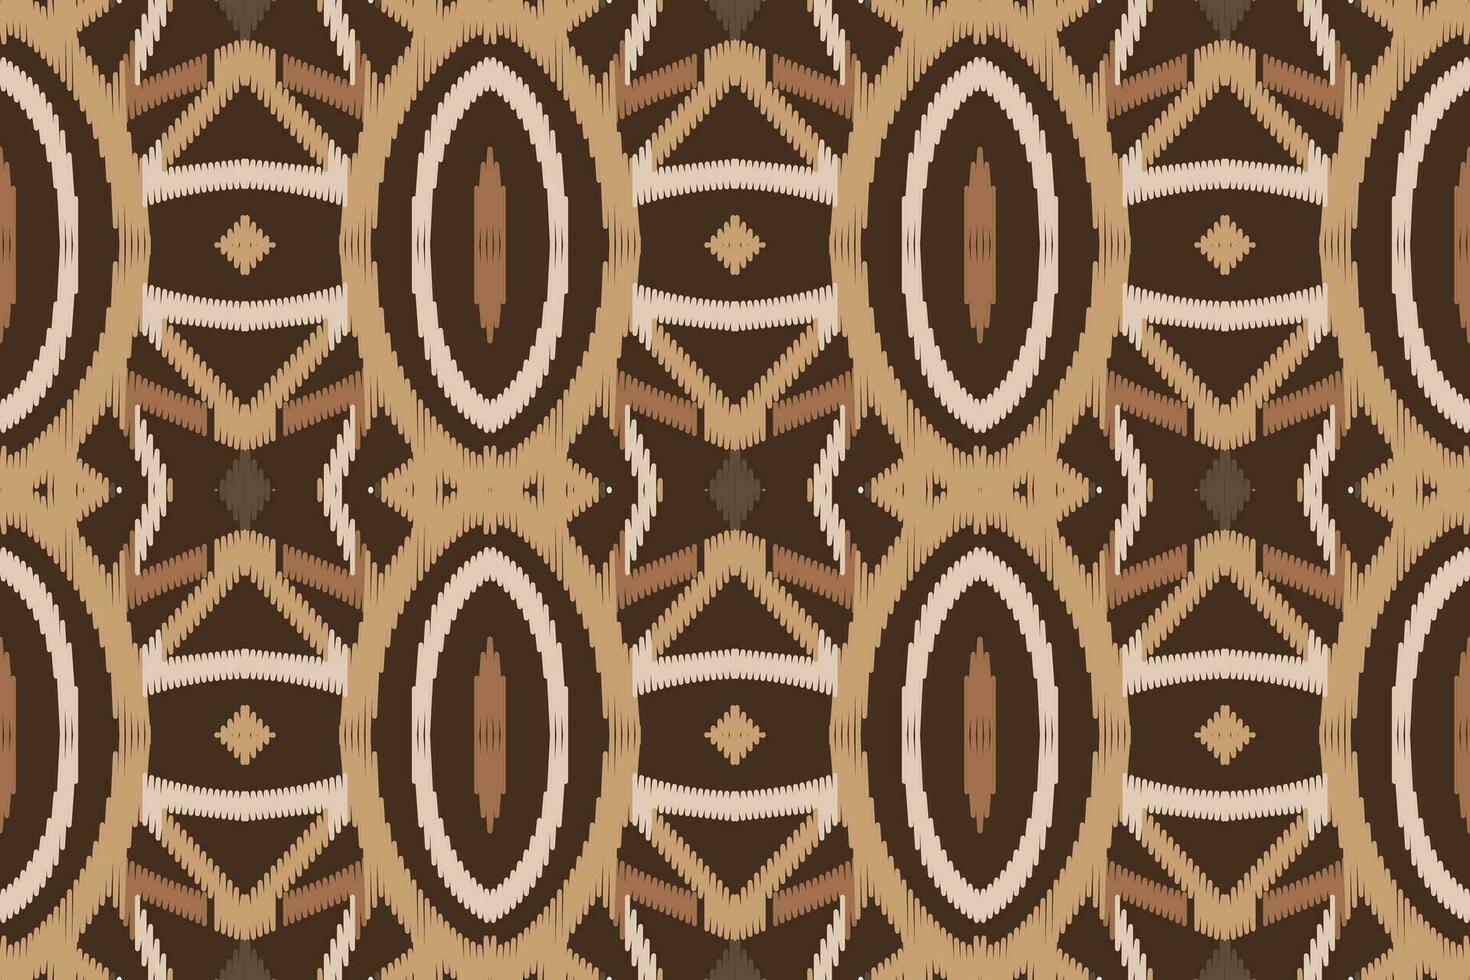 ikat kleding stof paisley borduurwerk achtergrond. ikat ontwerp meetkundig etnisch oosters patroon traditioneel. ikat aztec stijl abstract ontwerp voor afdrukken textuur,stof,sari,sari,tapijt. vector